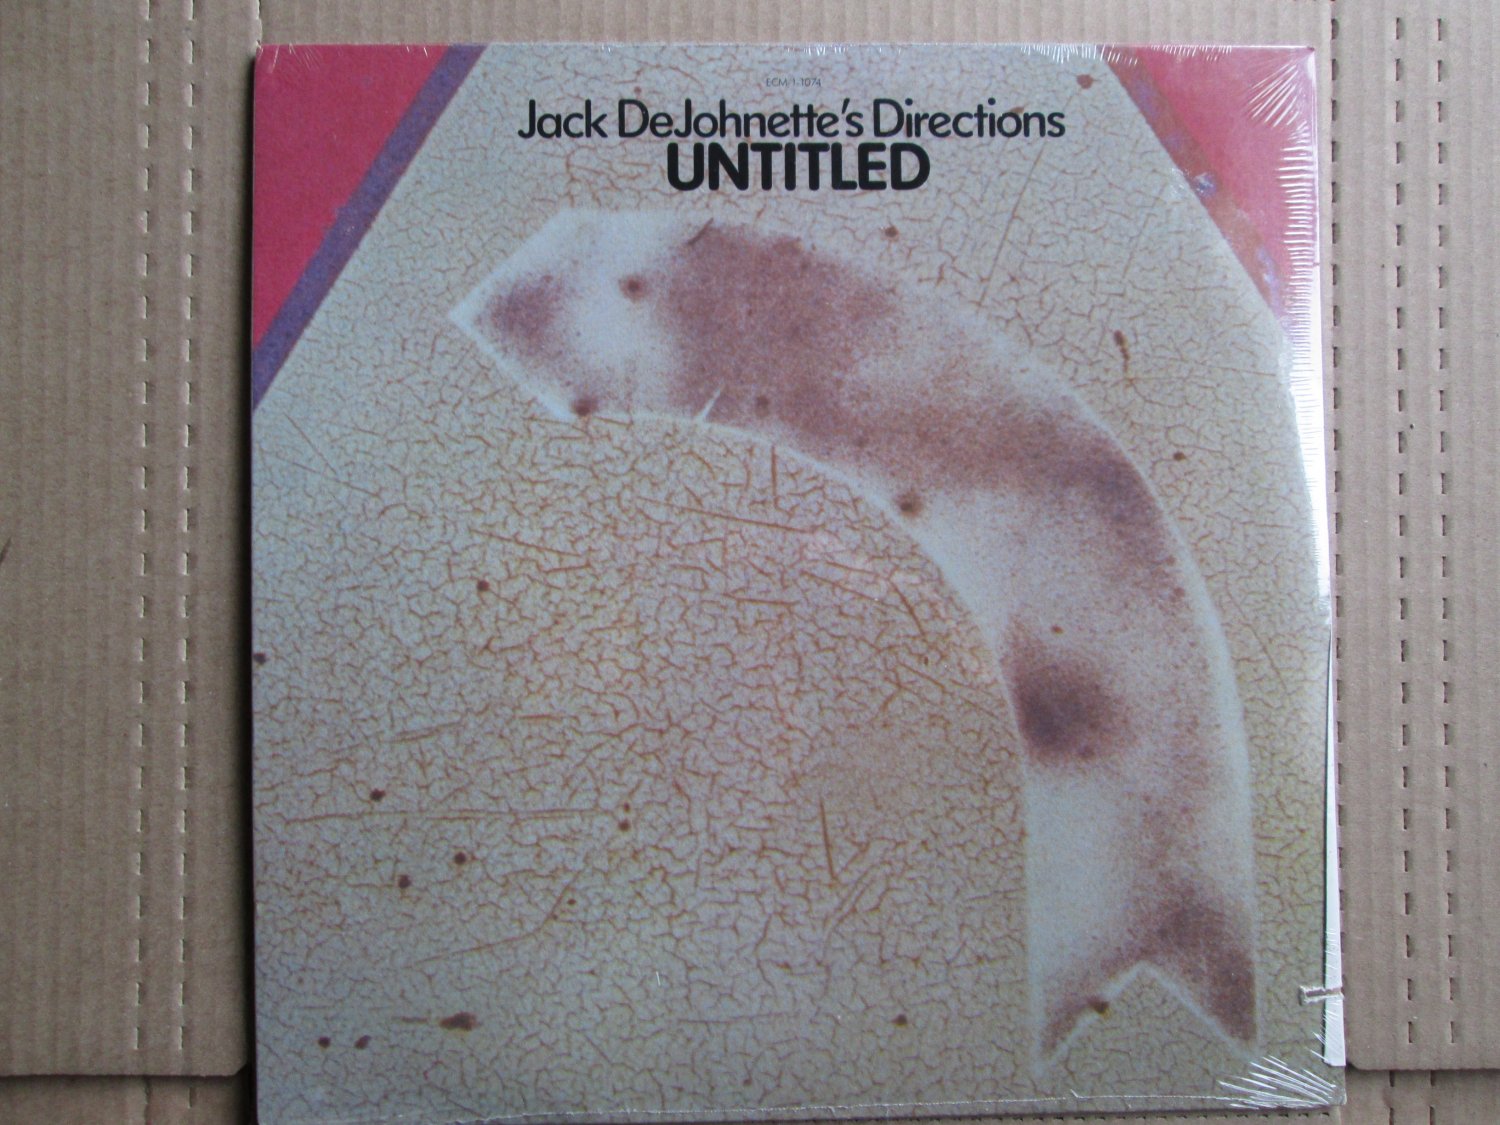 *Jack DeJohnette's Directions* Untitled 1976 ECM ** Sealed **